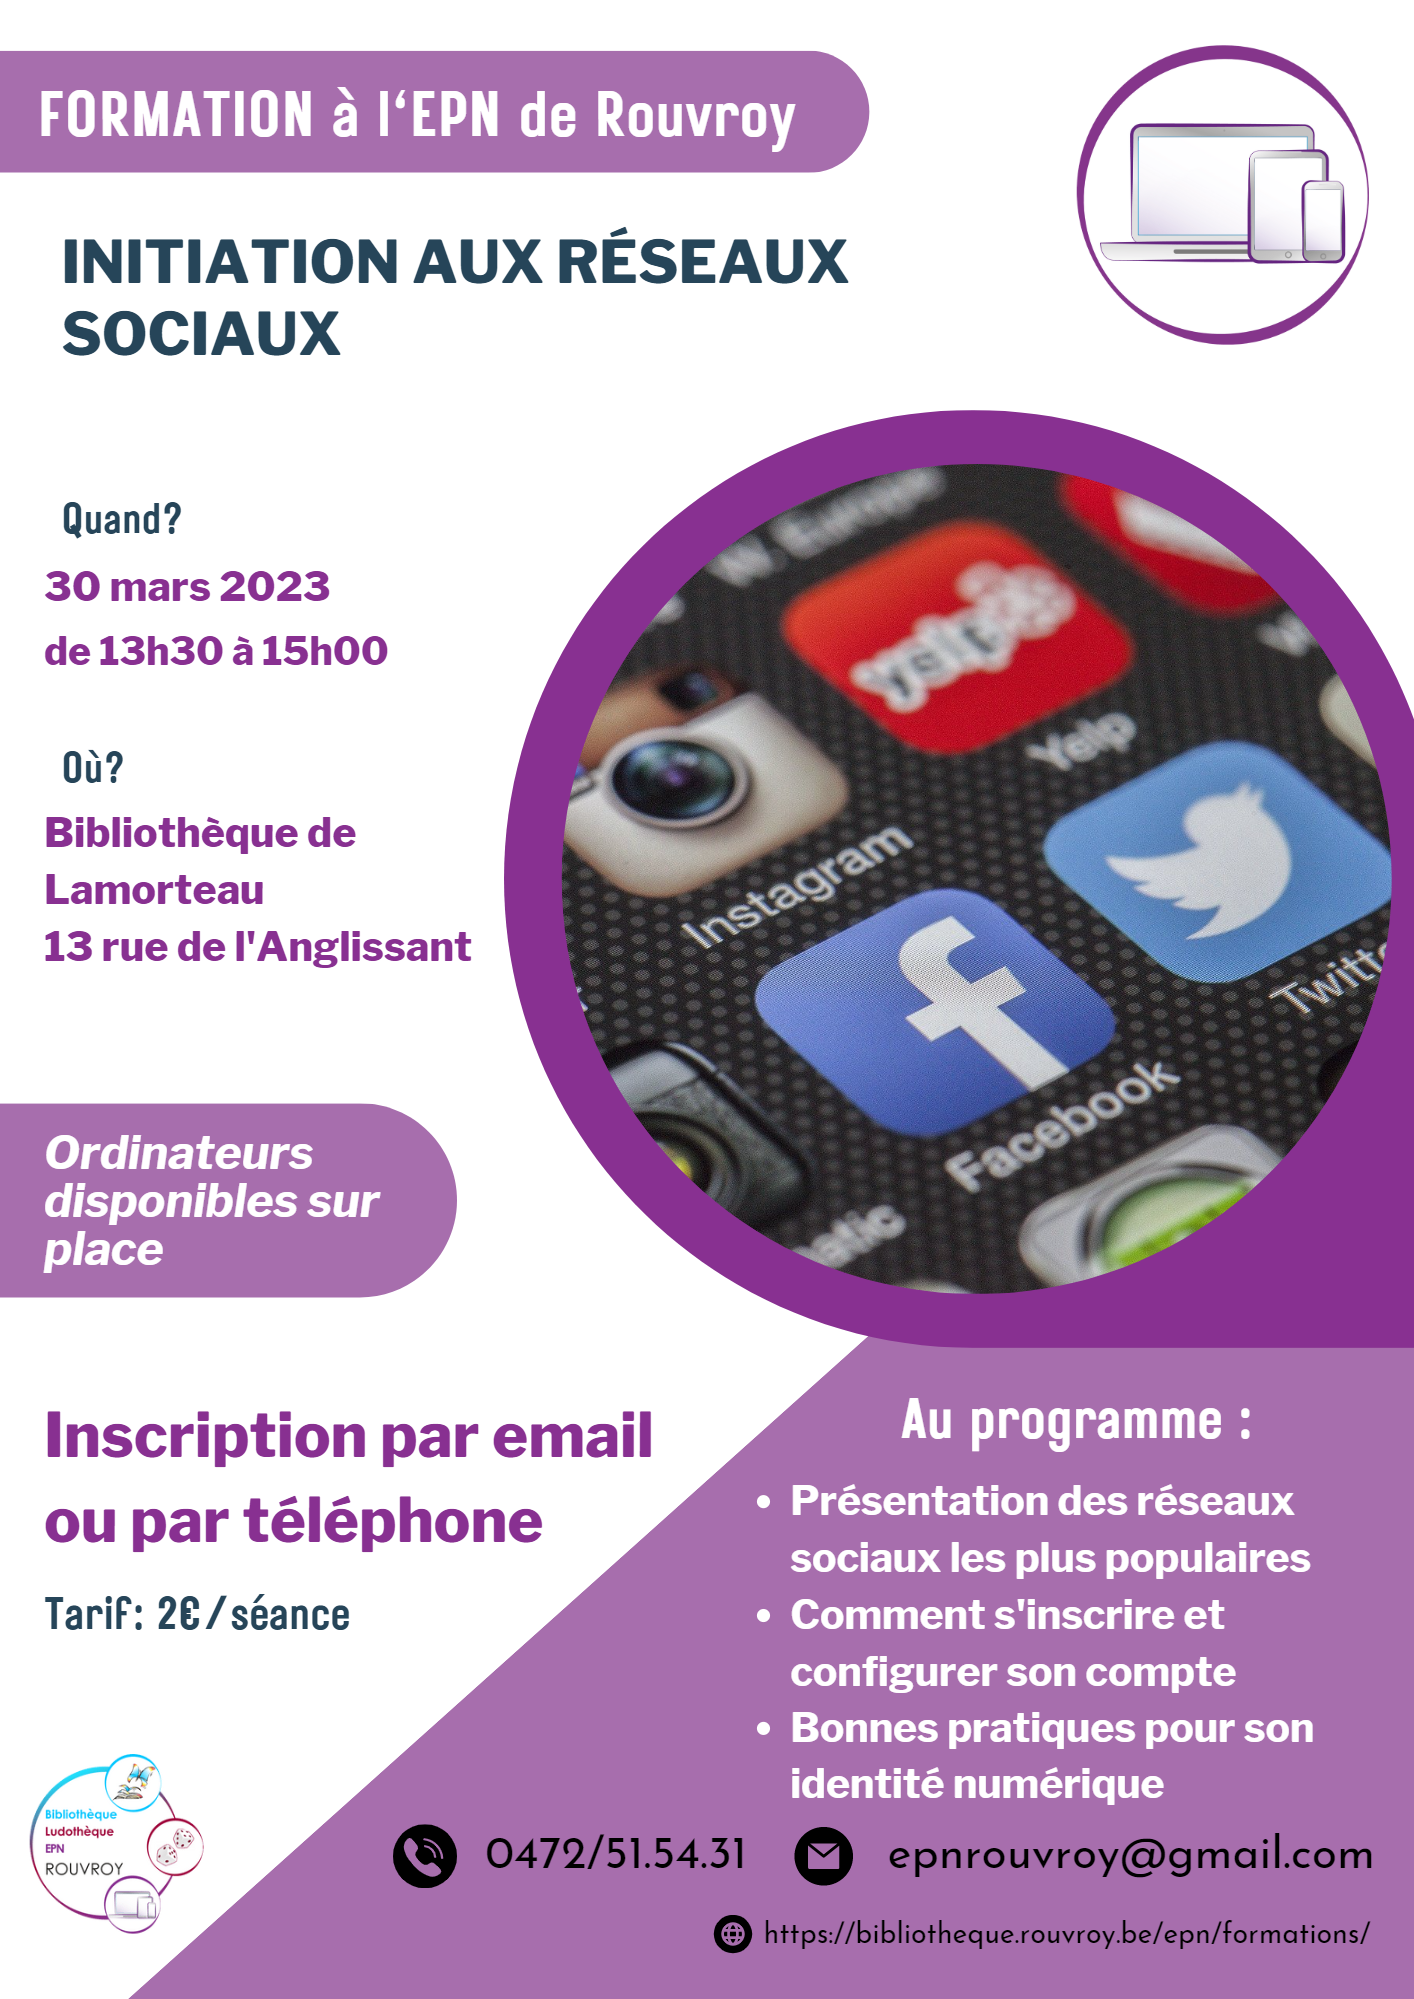 FORMATION EPN : Initiation aux réseaux sociaux – 30/03